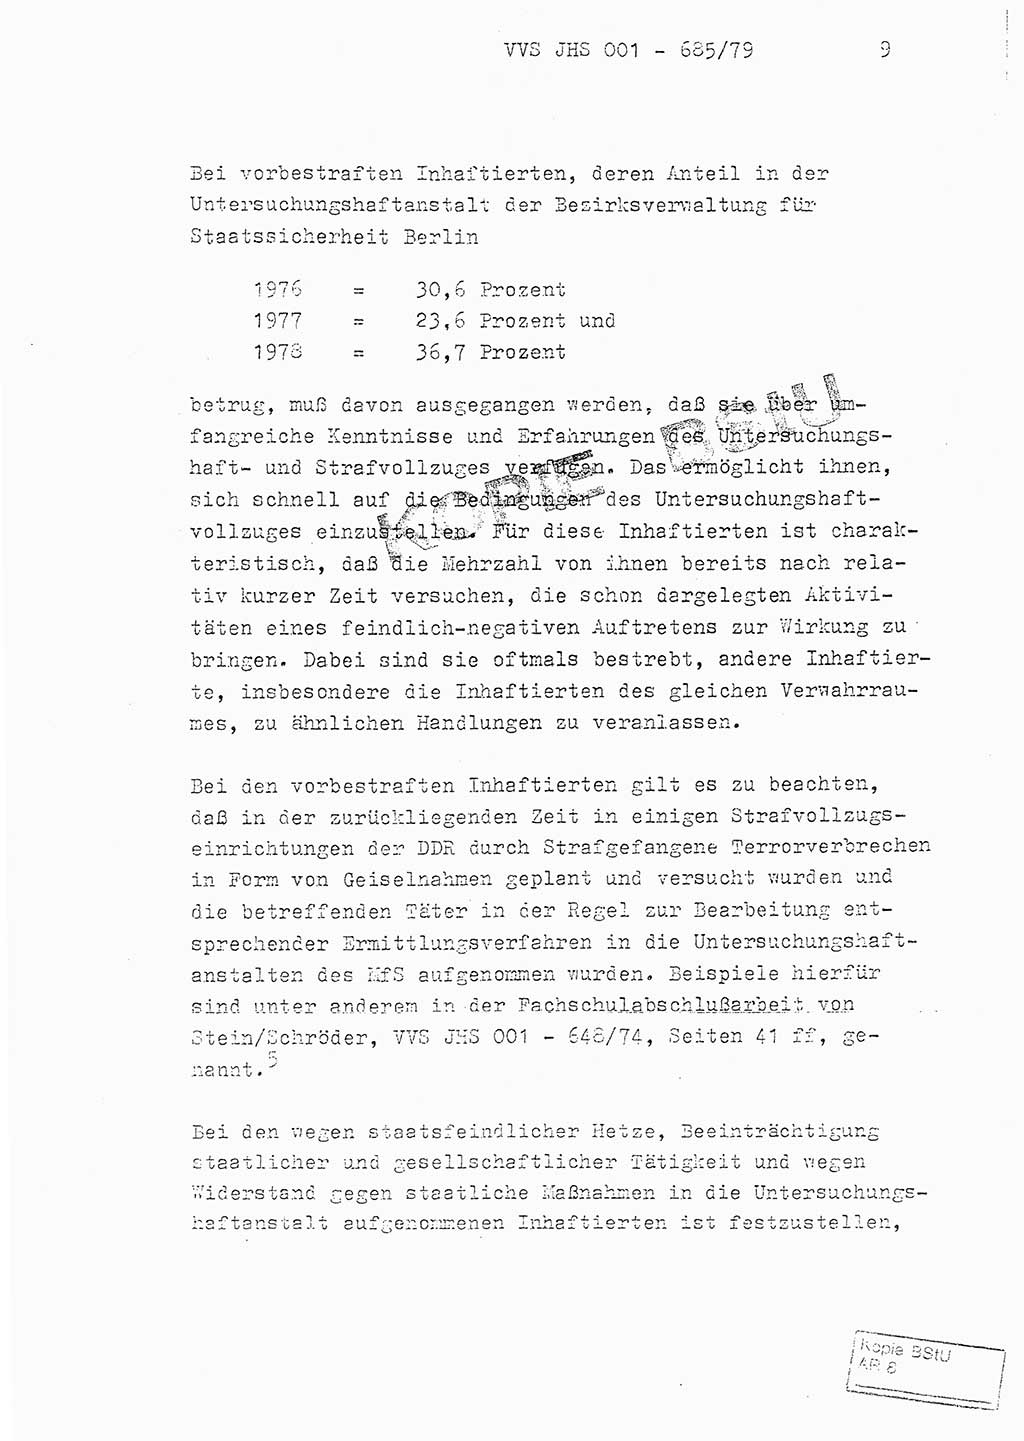 Fachschulabschlußarbeit Oberleutnant Helmut Peckruhn (BV Bln. Abt. ⅩⅣ), Ministerium für Staatssicherheit (MfS) [Deutsche Demokratische Republik (DDR)], Juristische Hochschule (JHS), Vertrauliche Verschlußsache (VVS) 001-685/79, Potsdam 1979, Seite 9 (FS-Abschl.-Arb. MfS DDR JHS VVS 001-685/79 1979, S. 9)